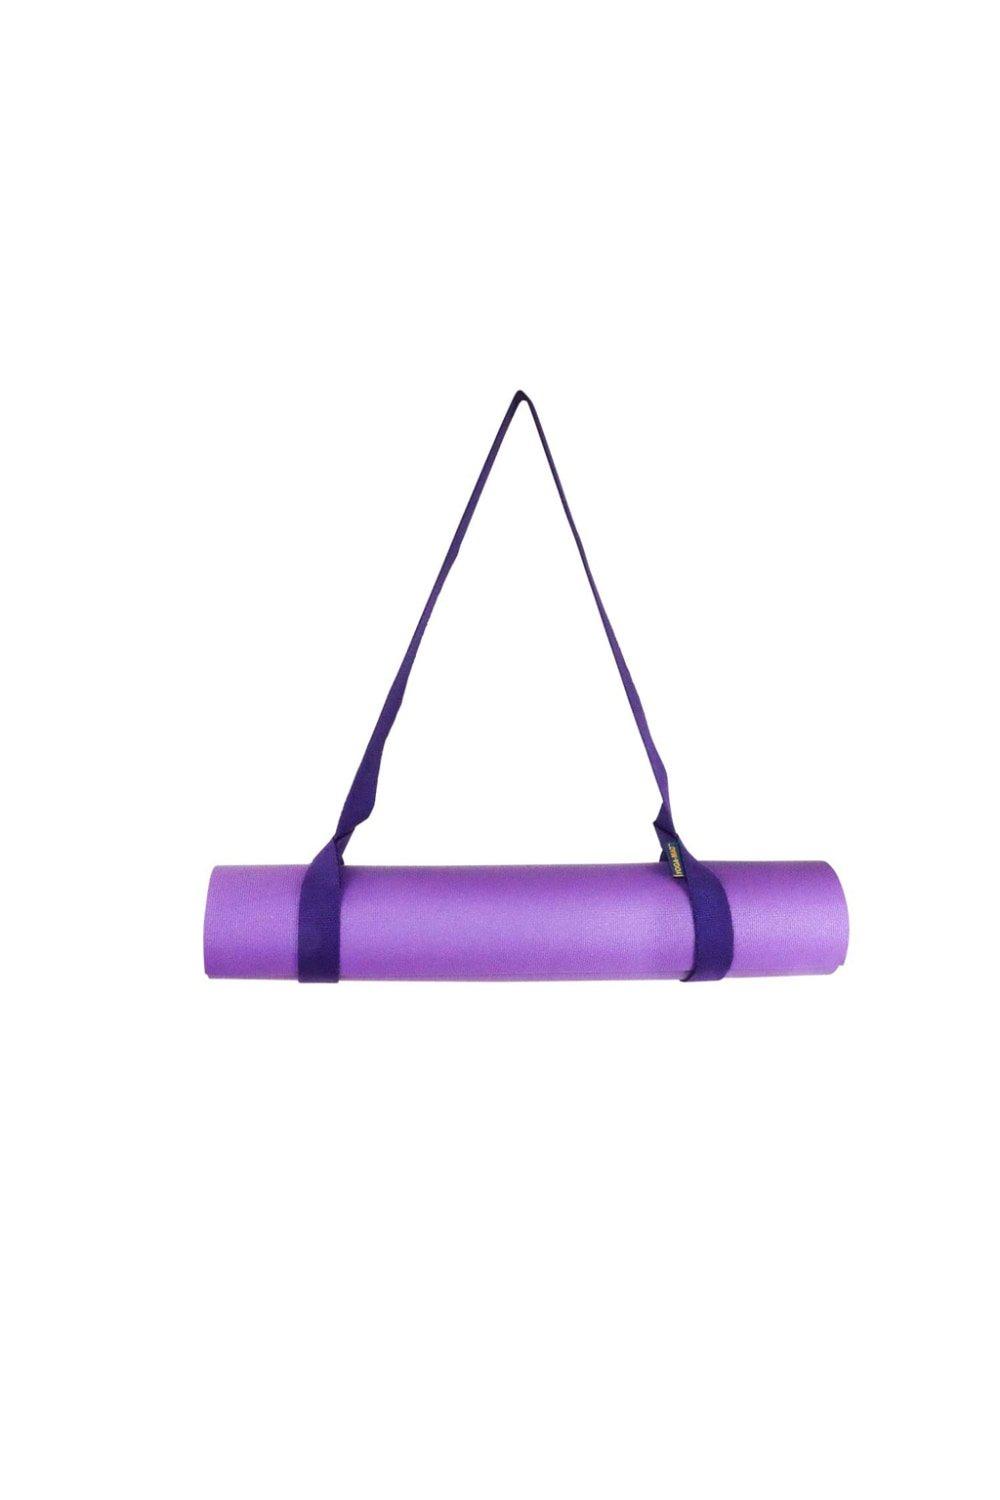 Ремень для переноски хлопкового коврика для йоги Yoga-Mad, фиолетовый растягивающийся ремень для йоги 155 см гибкий растягиватель для ноги